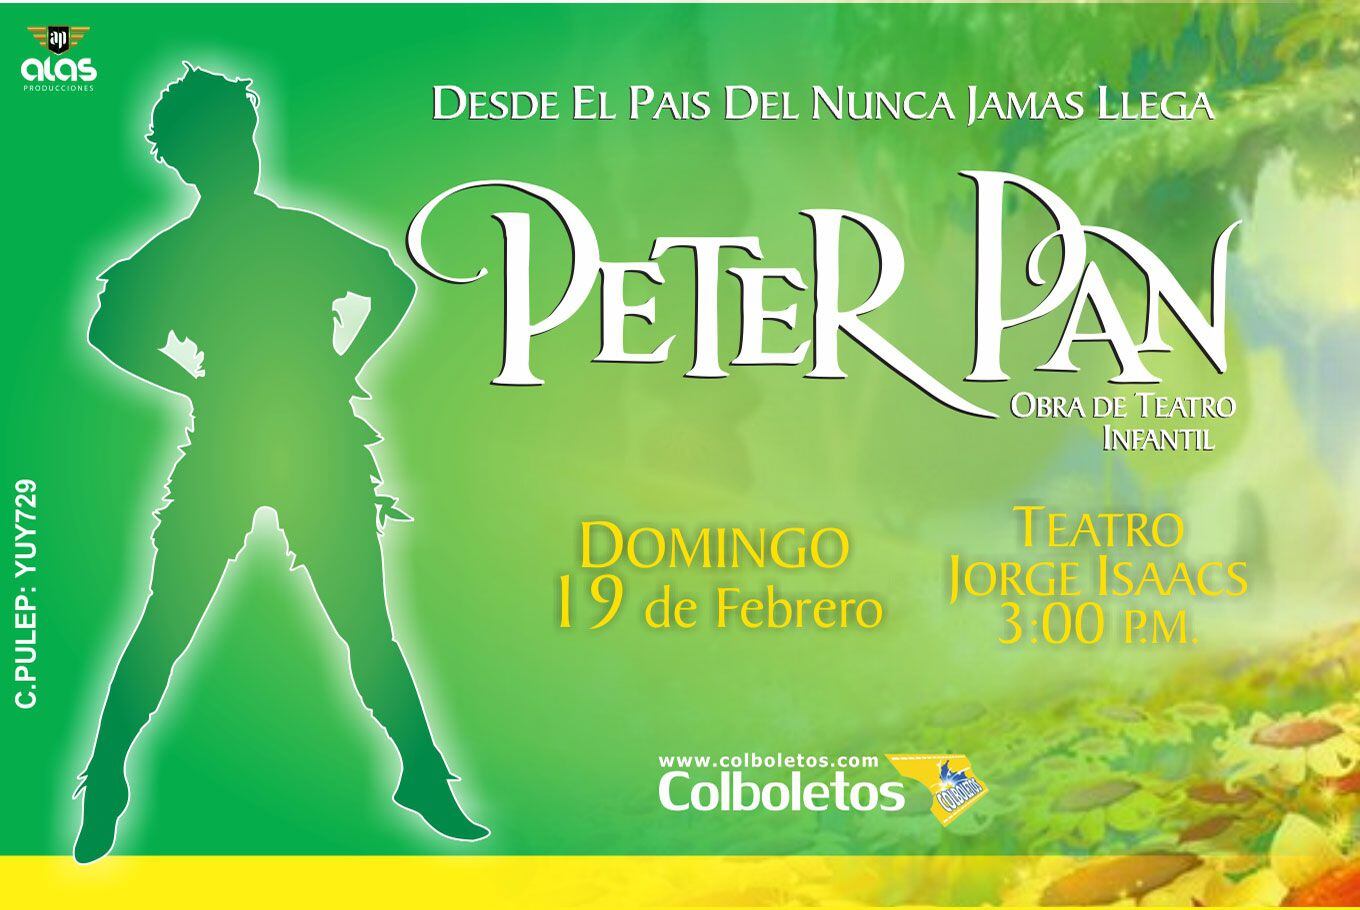 "Peter Pan y el país del nunca jamás", la inolvidable historia llega al escenario del Teatro Jorge Isaacs en Cali